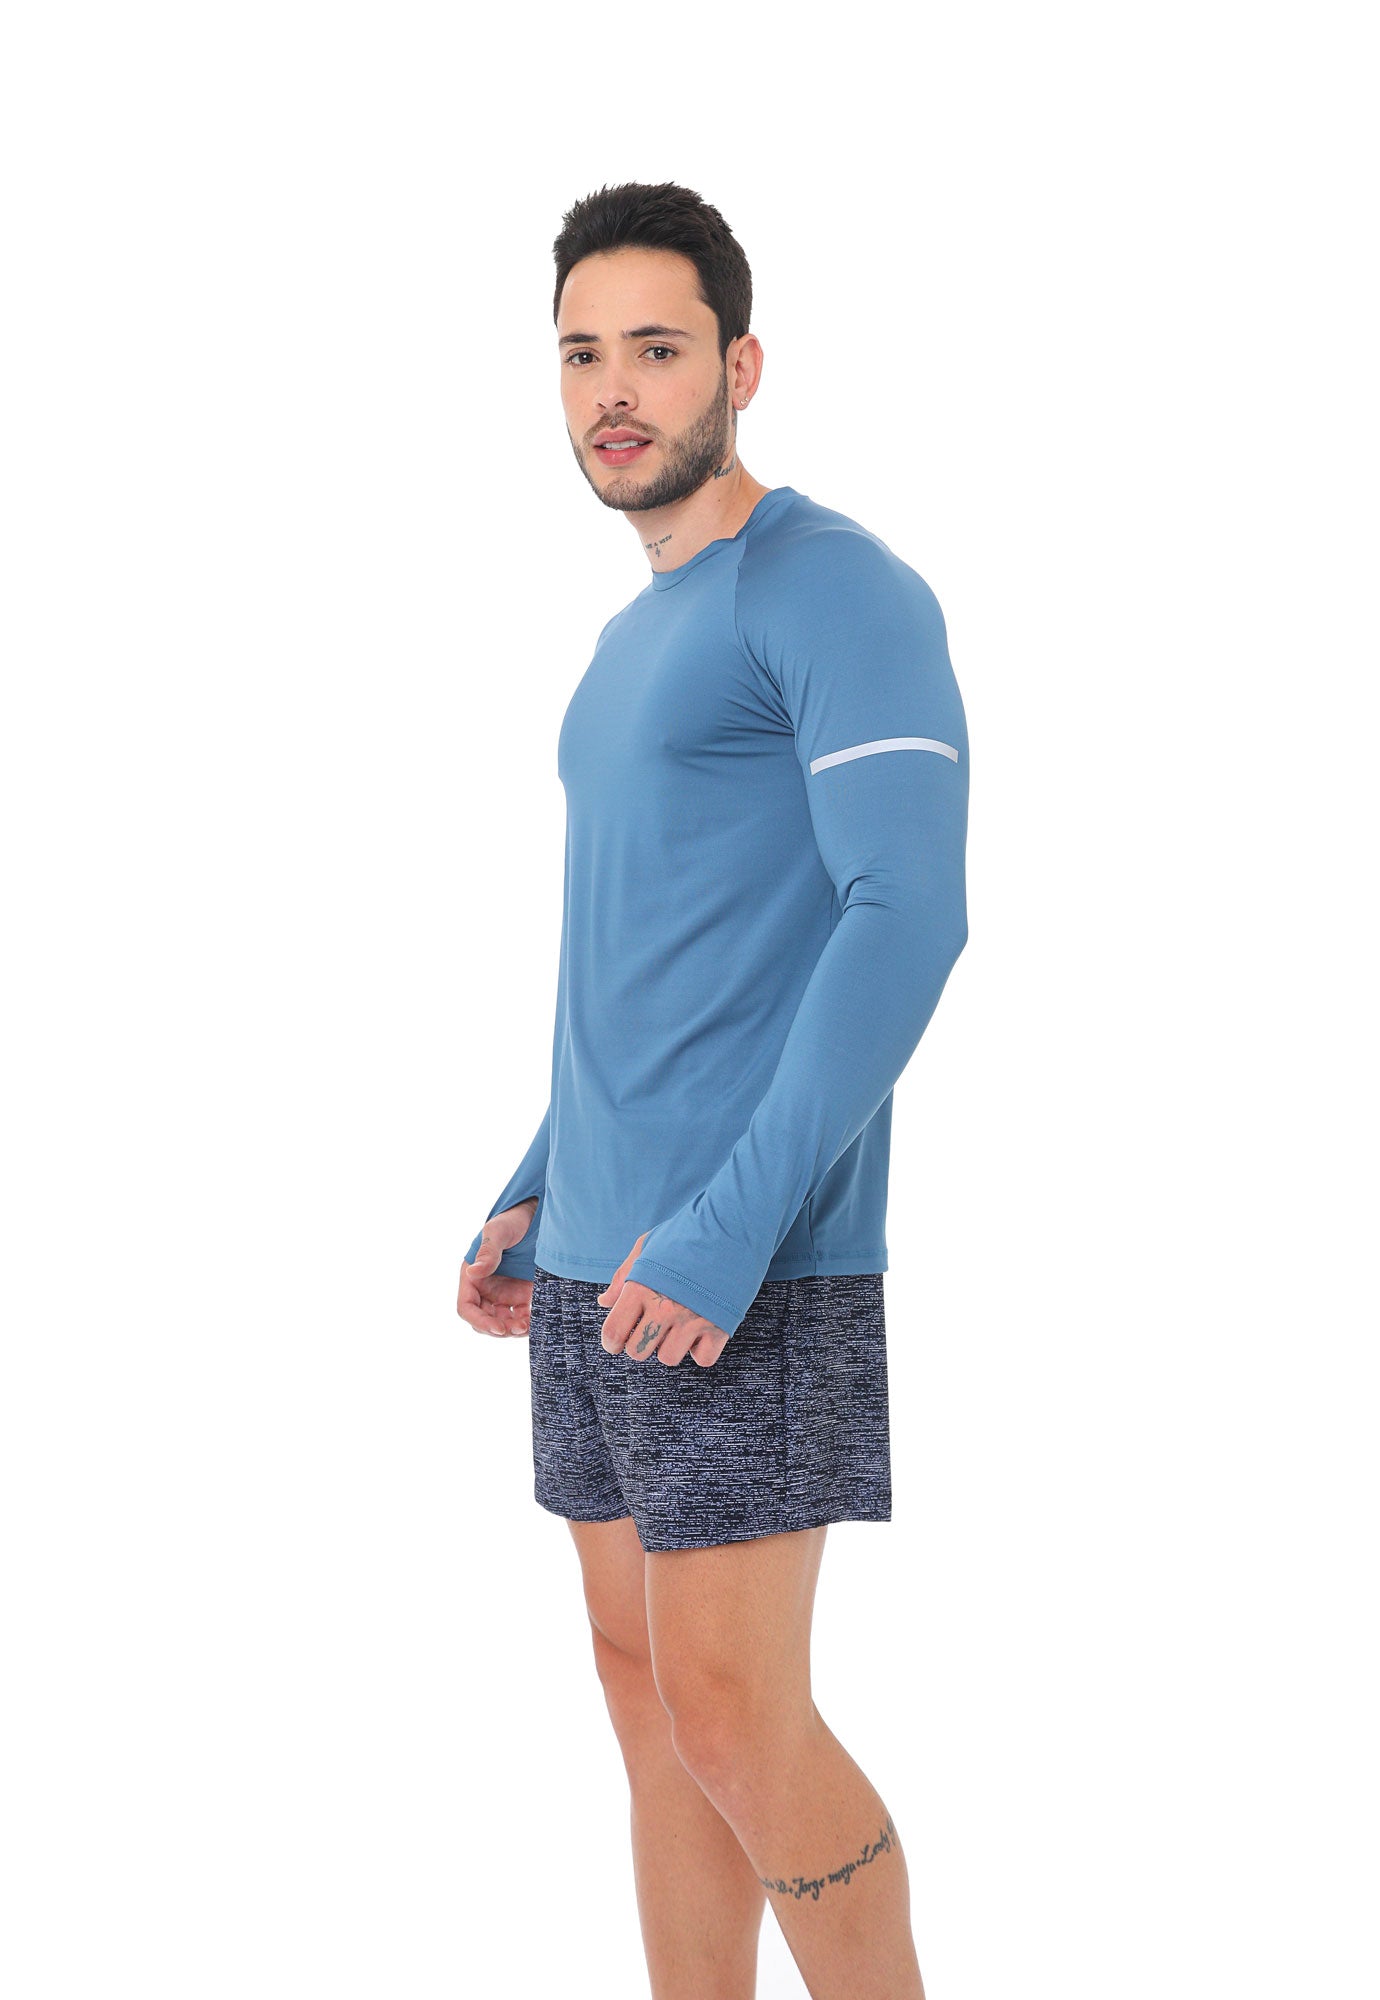 Camiseta deportiva azul petro, manga larga detalles reflectivos en frente para hombre